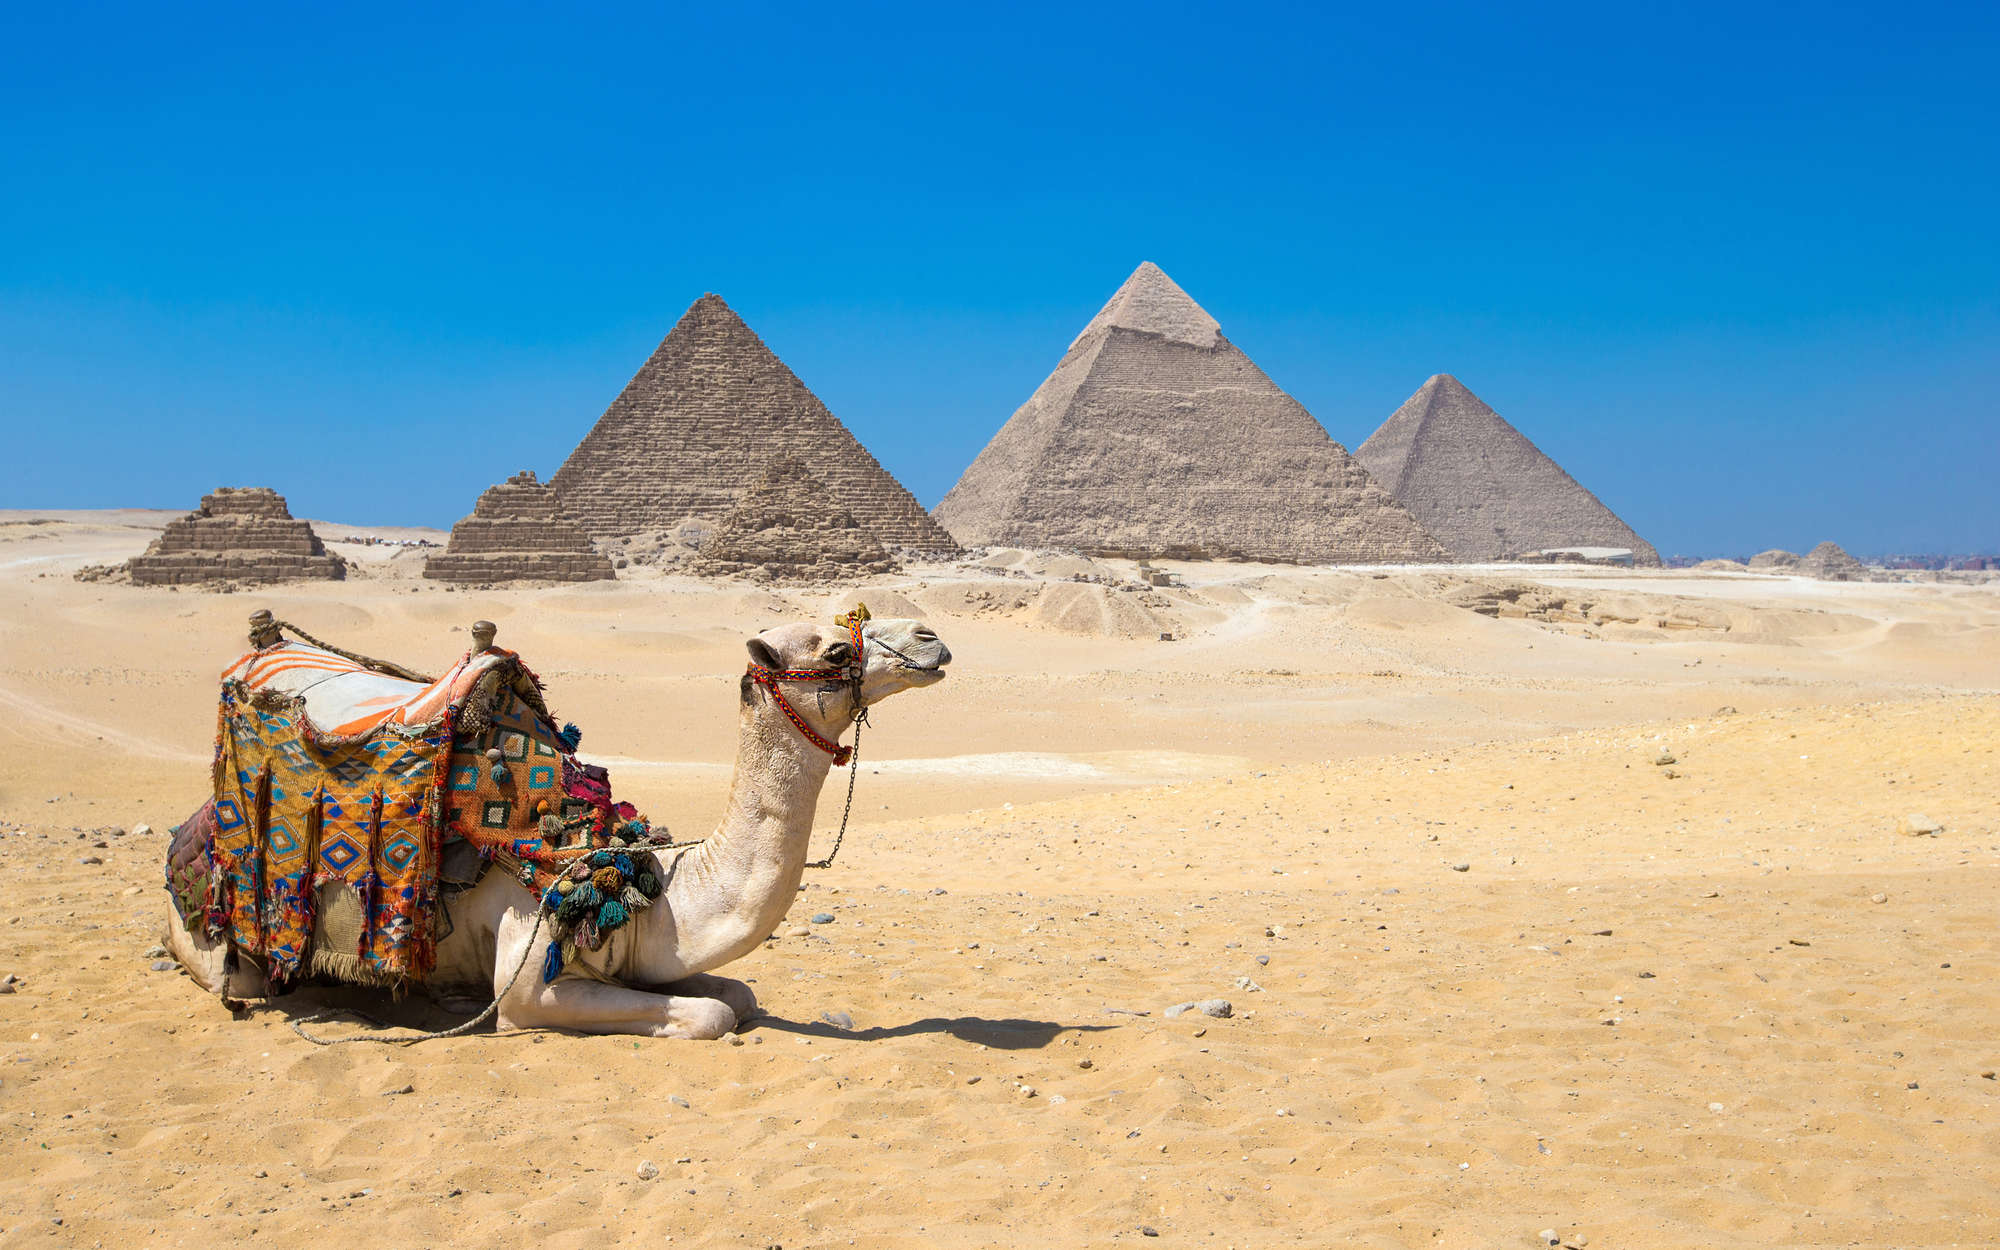             Fotomural Pirámides de Giza con camello - nácar liso
        